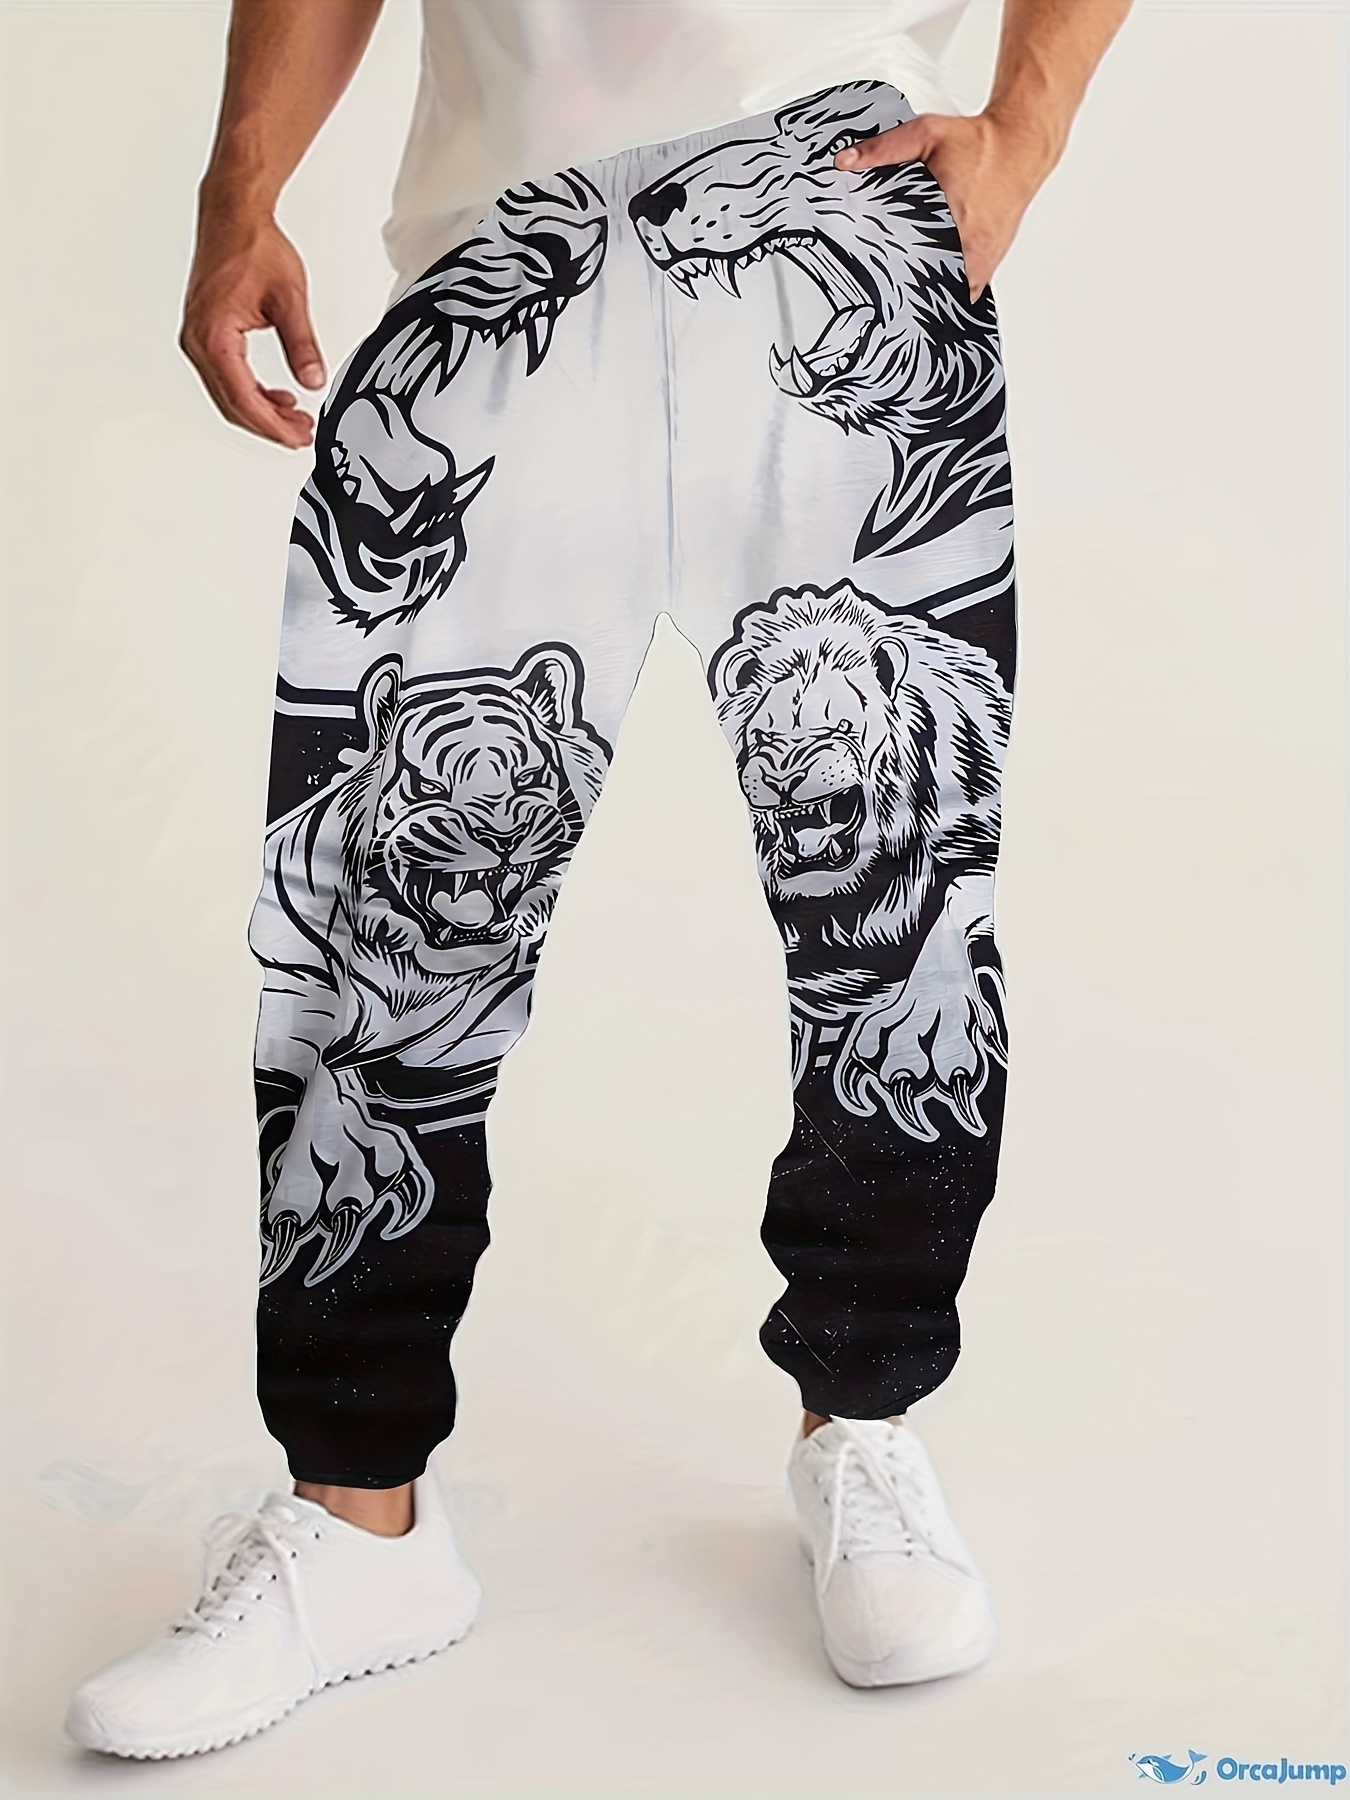 Plus Size Men's Tiger & Lion Print Sweatpants Fashion Joggers For  Autumn/winter, Men's Clothing